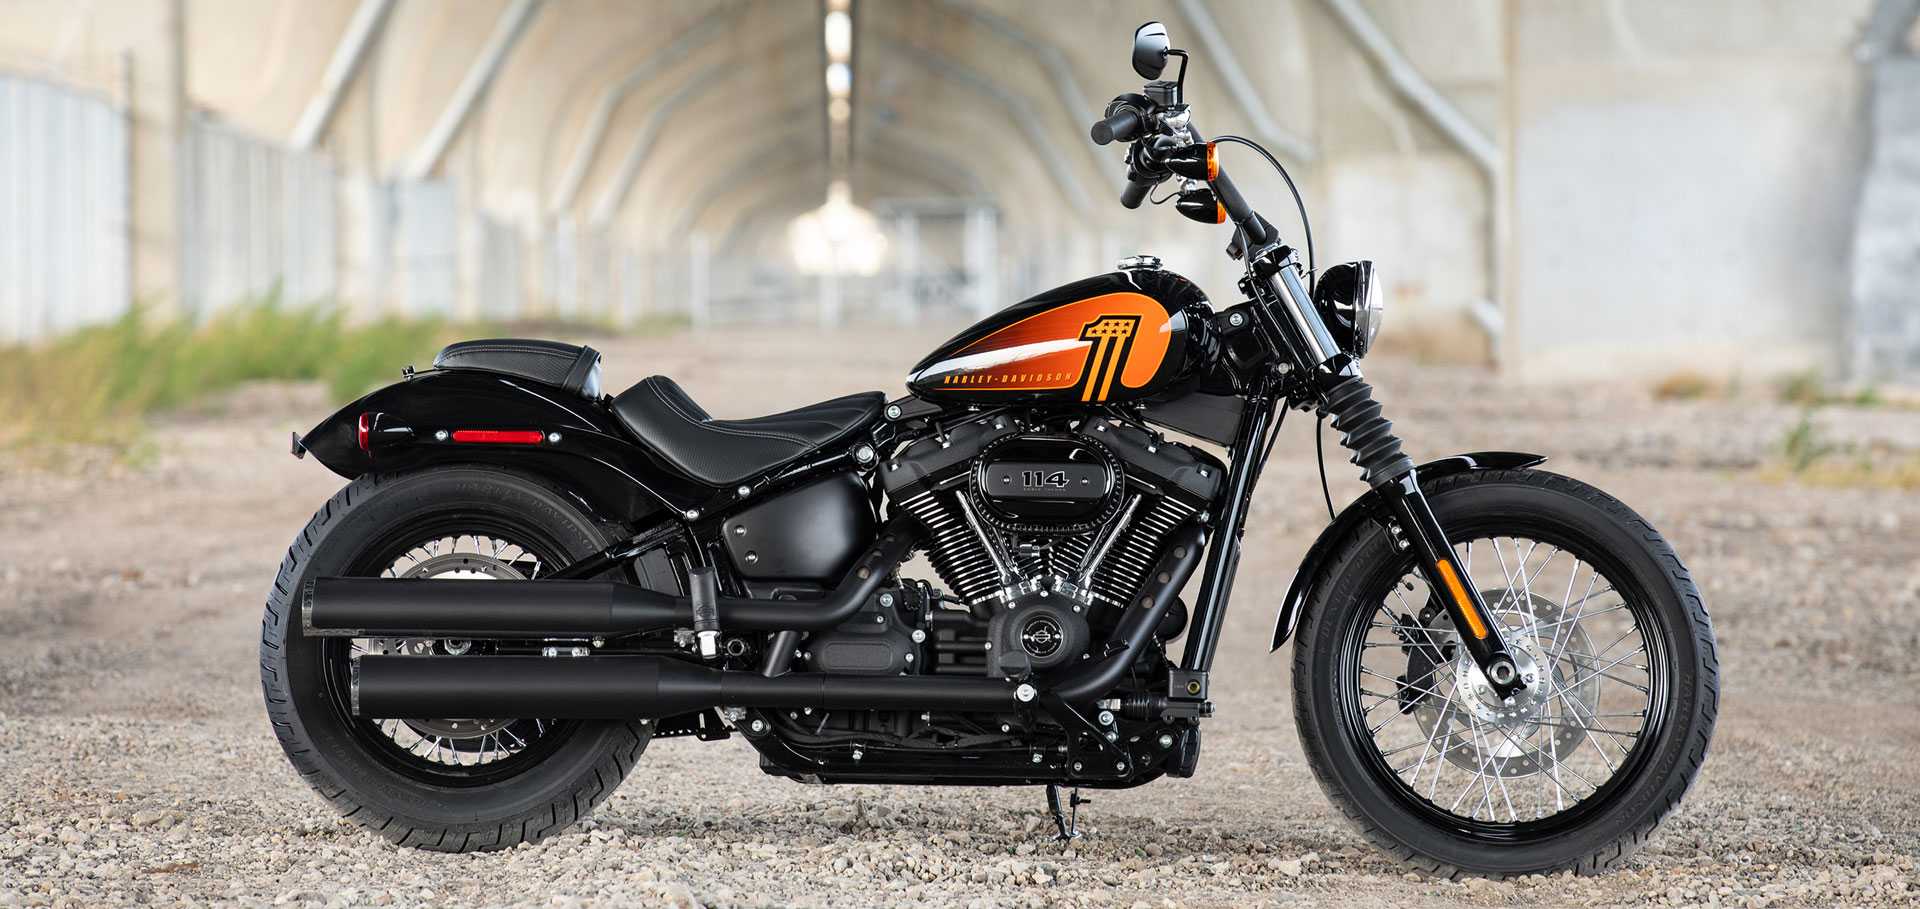 Modele motocykli Harley-Davidson® oferowane w roku 2021 rozwijają pasję do przygód i wolności